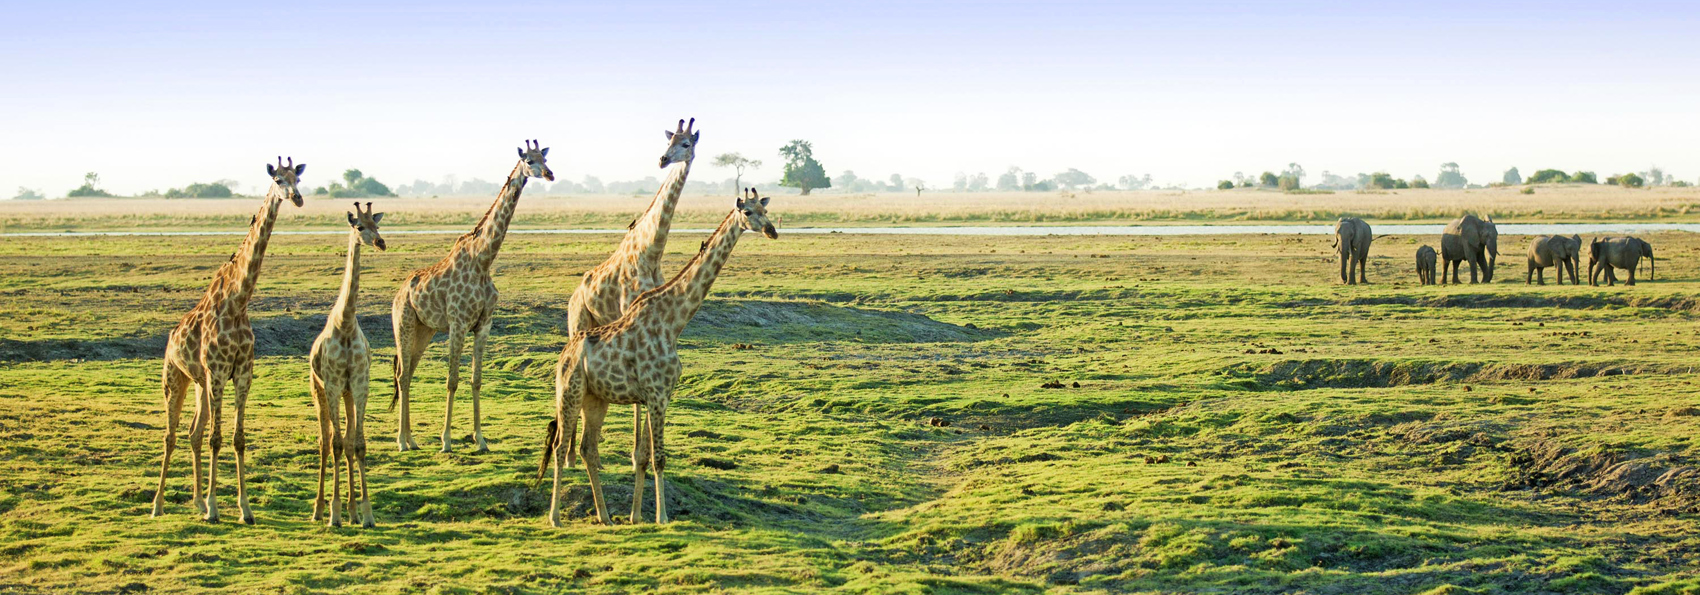 sydafrika - chobe nationalpark_giraf_01